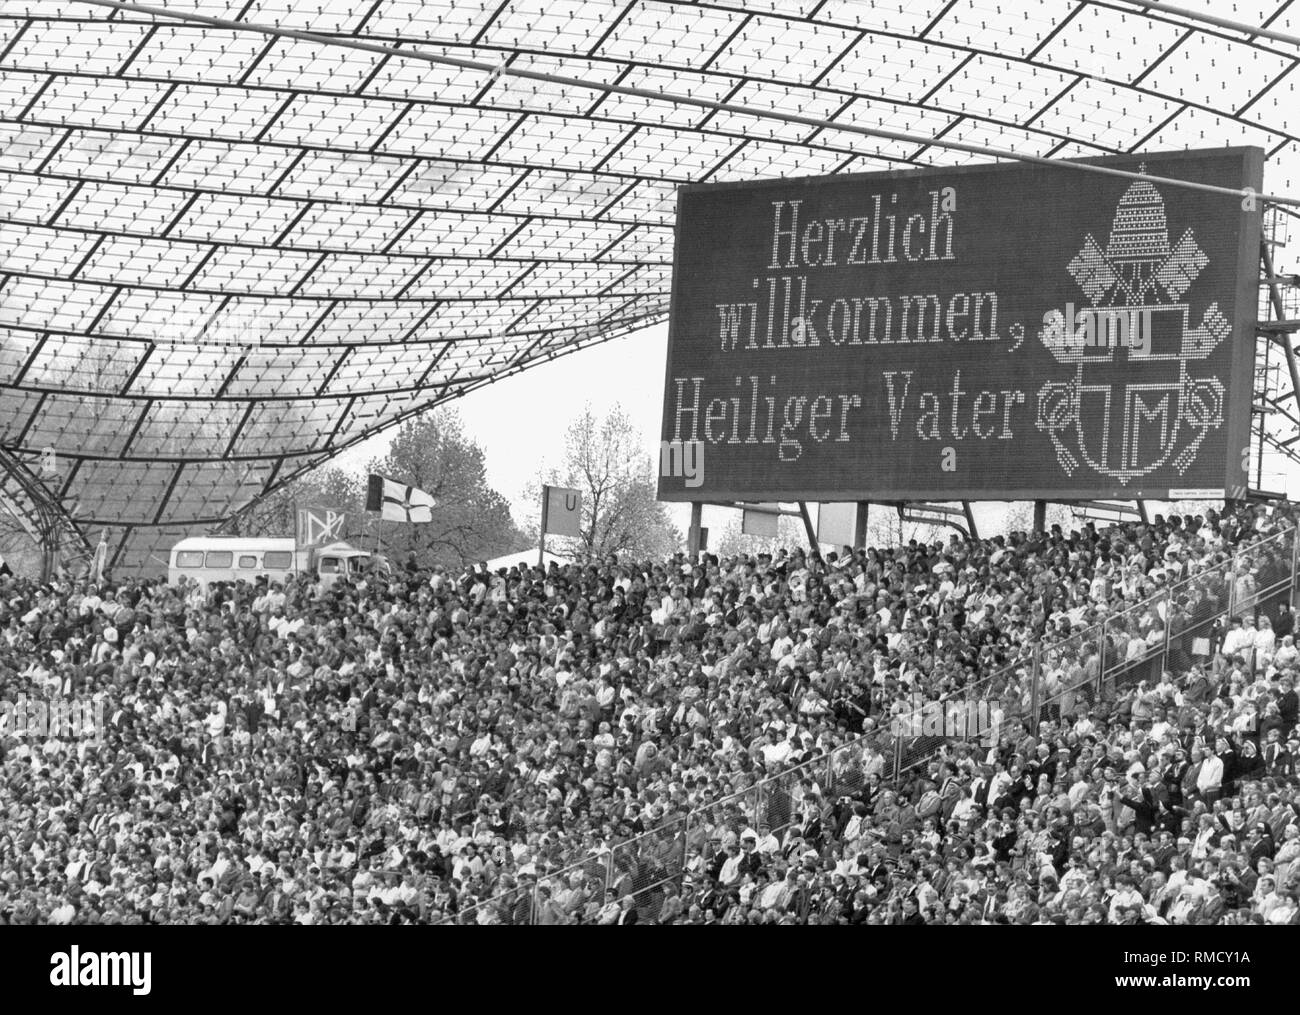 Bei seinem zweiten Besuch in Deutschland, Papst Johannes Paul II seliggesprochen der Jesuitenpater Rupert Mayer, der von den Nazis verfolgt worden war, im Olympiastadion München. Auf der Anzeigetafel (englische Übersetzung) "Heiligen Vater" willkommen. Stockfoto